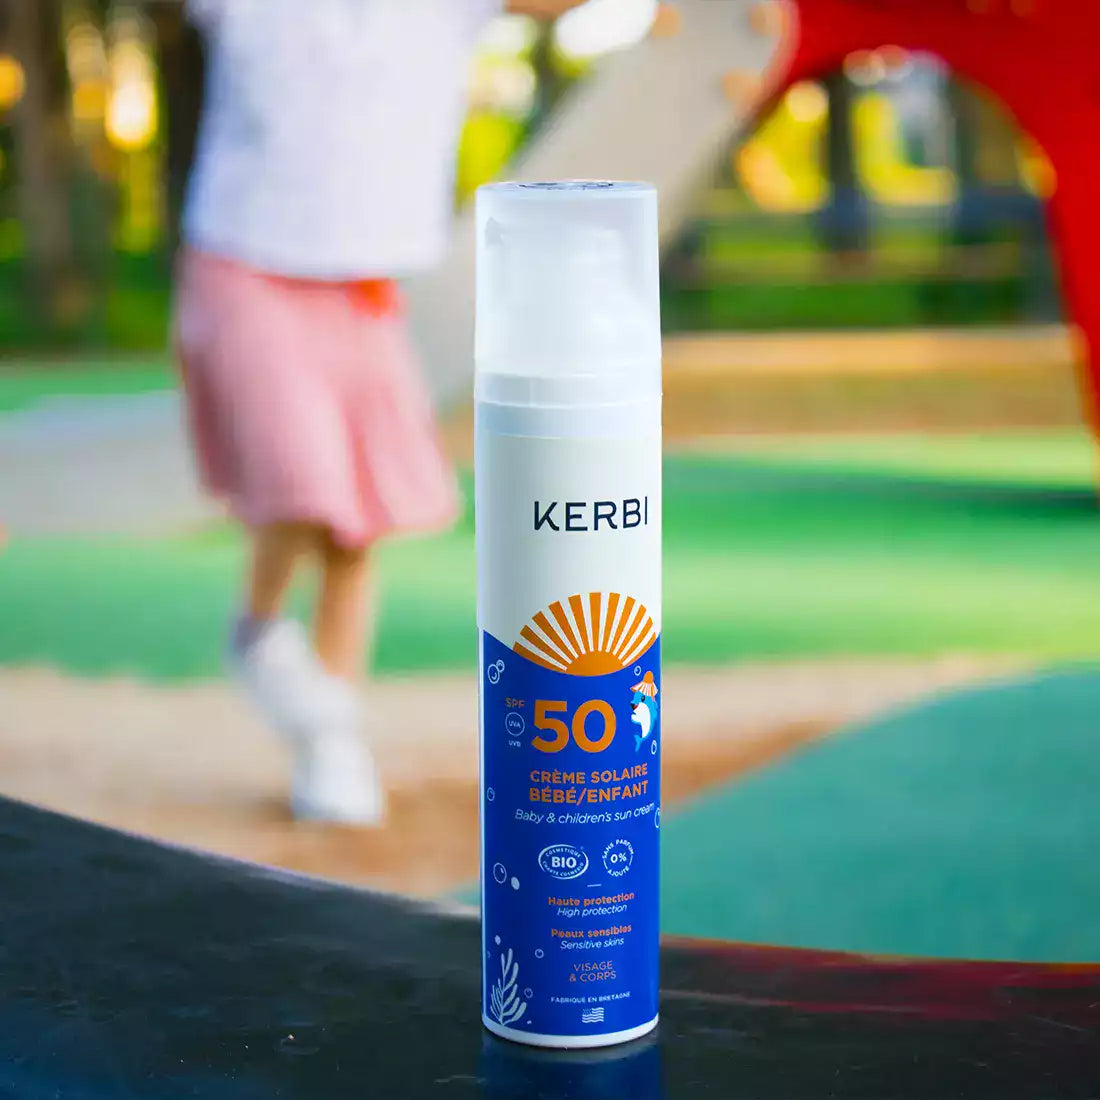 Creme solaire SPF50 Kerbi - Formule douce, spécialement conçue pour la peau délicate des enfants, protection UVA/UVB